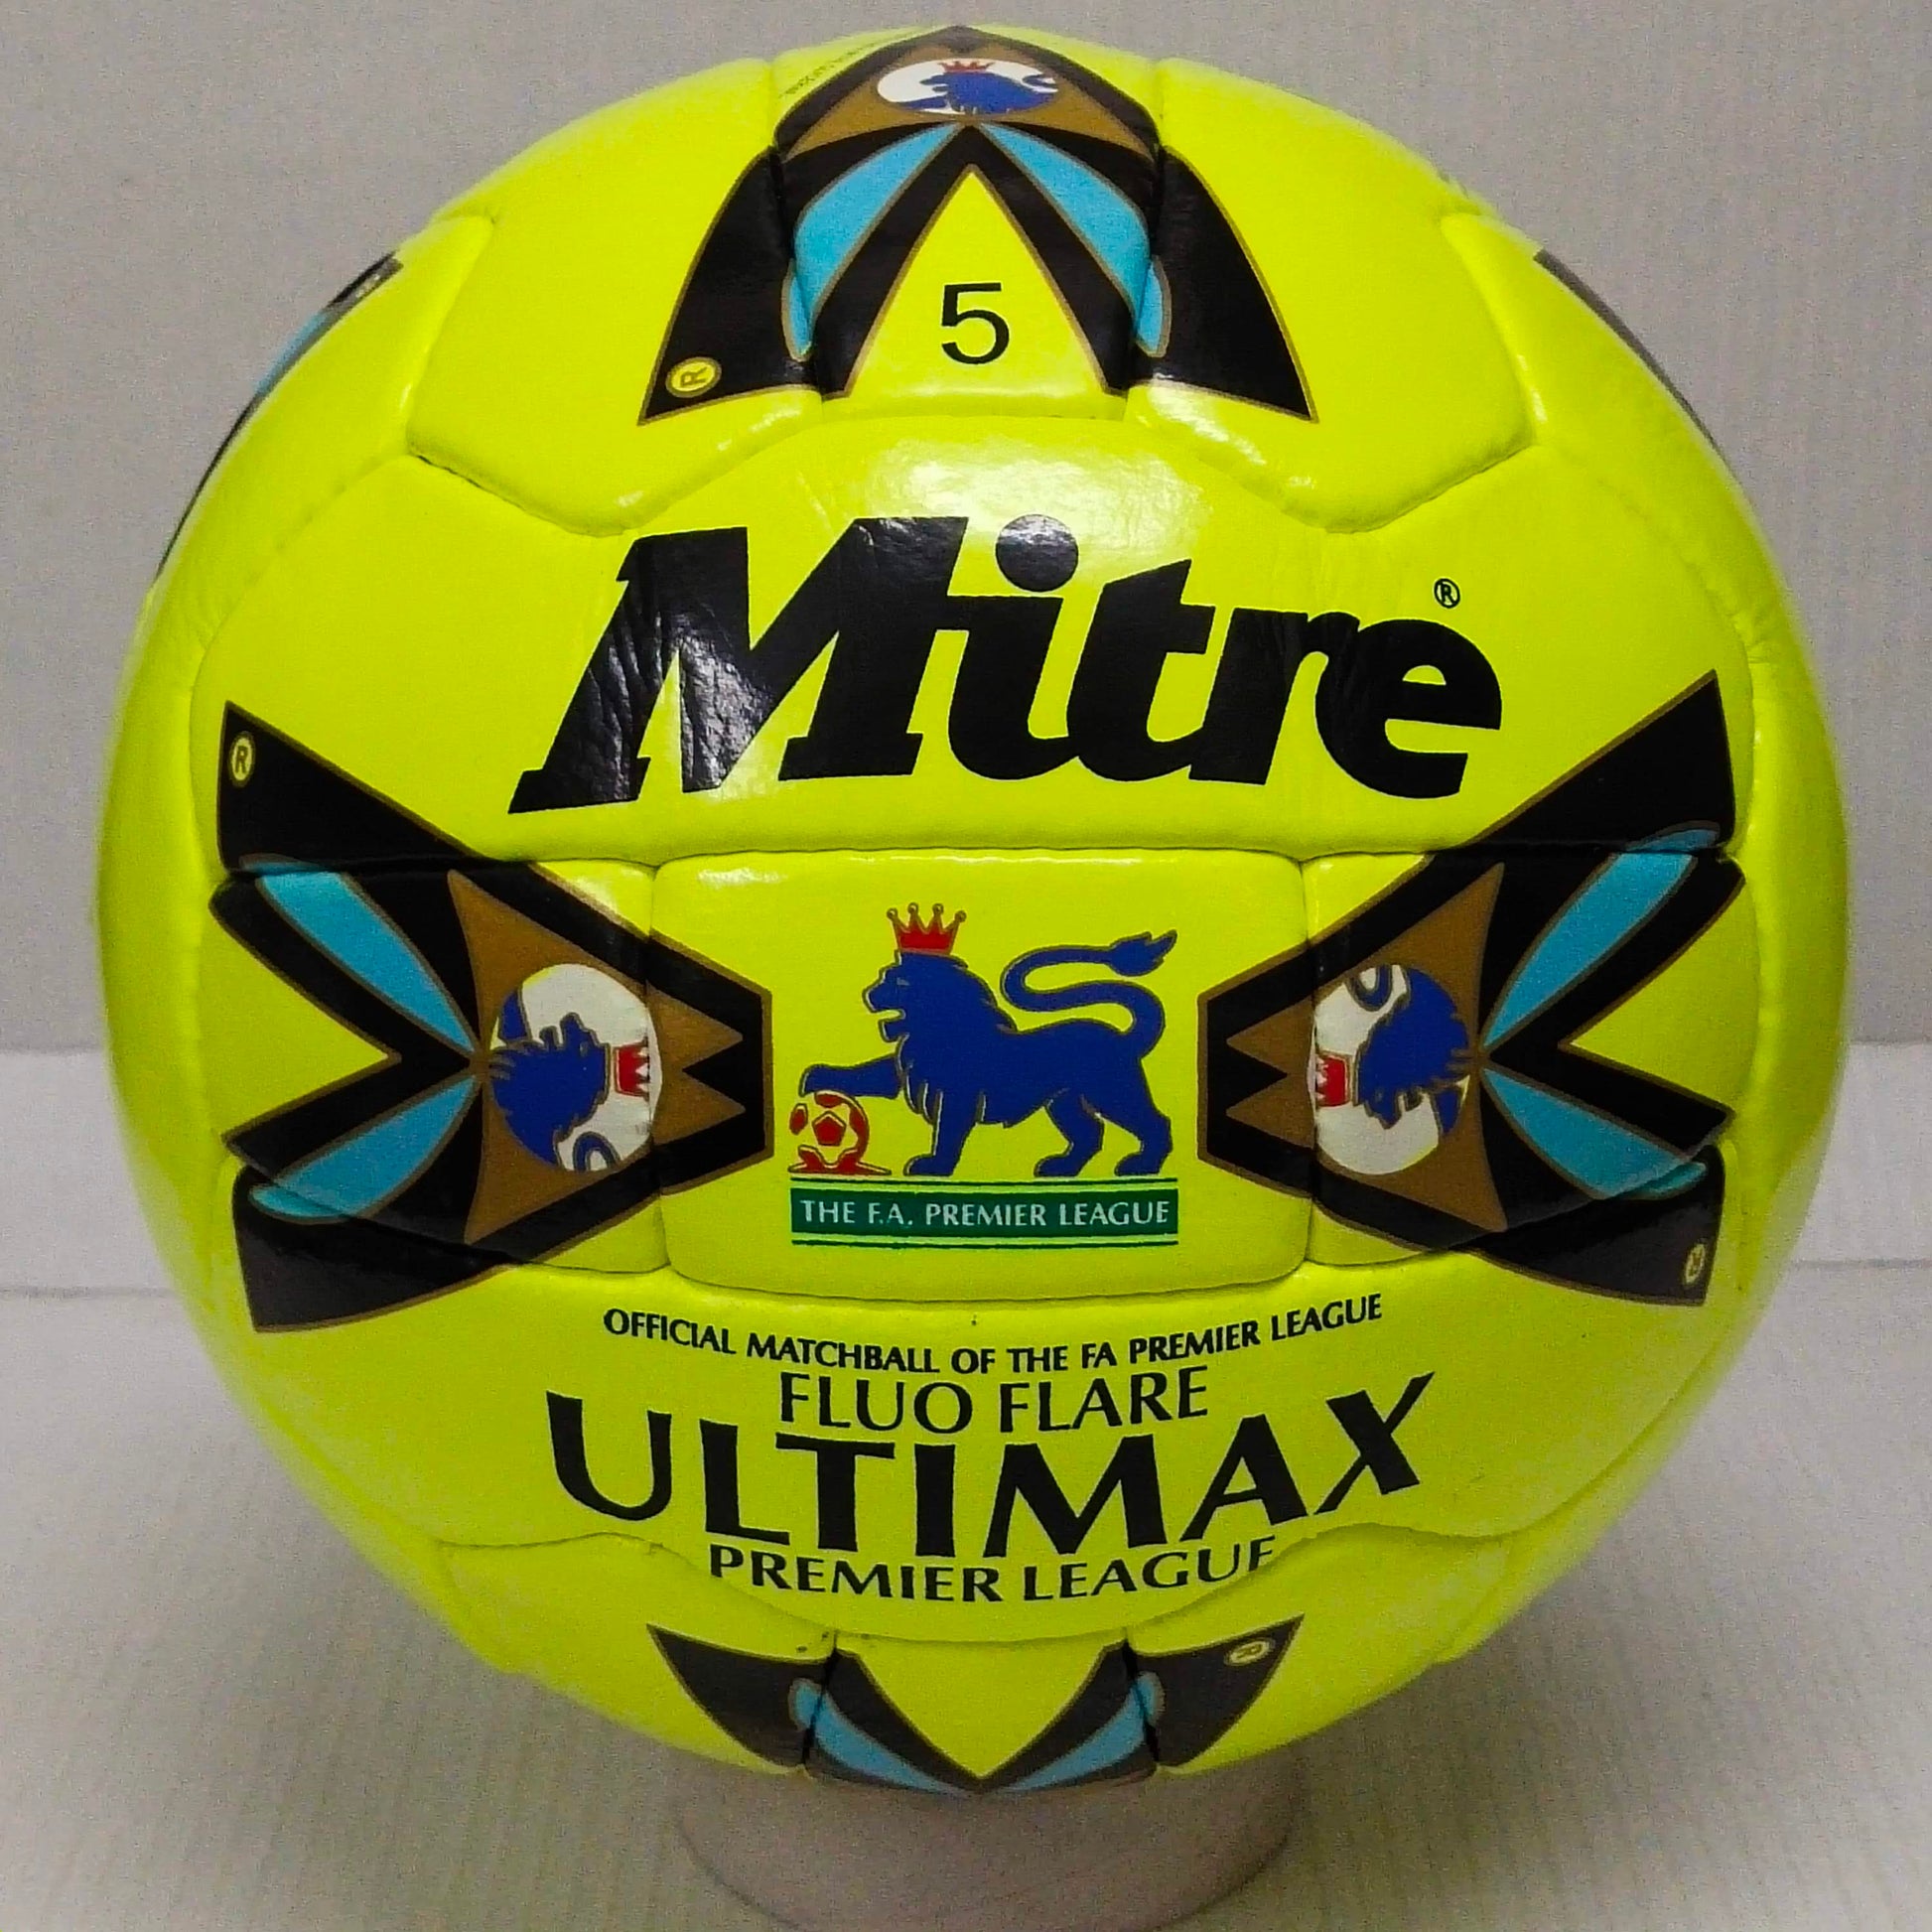 Mitre Ultimax The FA Premier League | Fluro Flare | OMB 1998 | Size 5 02